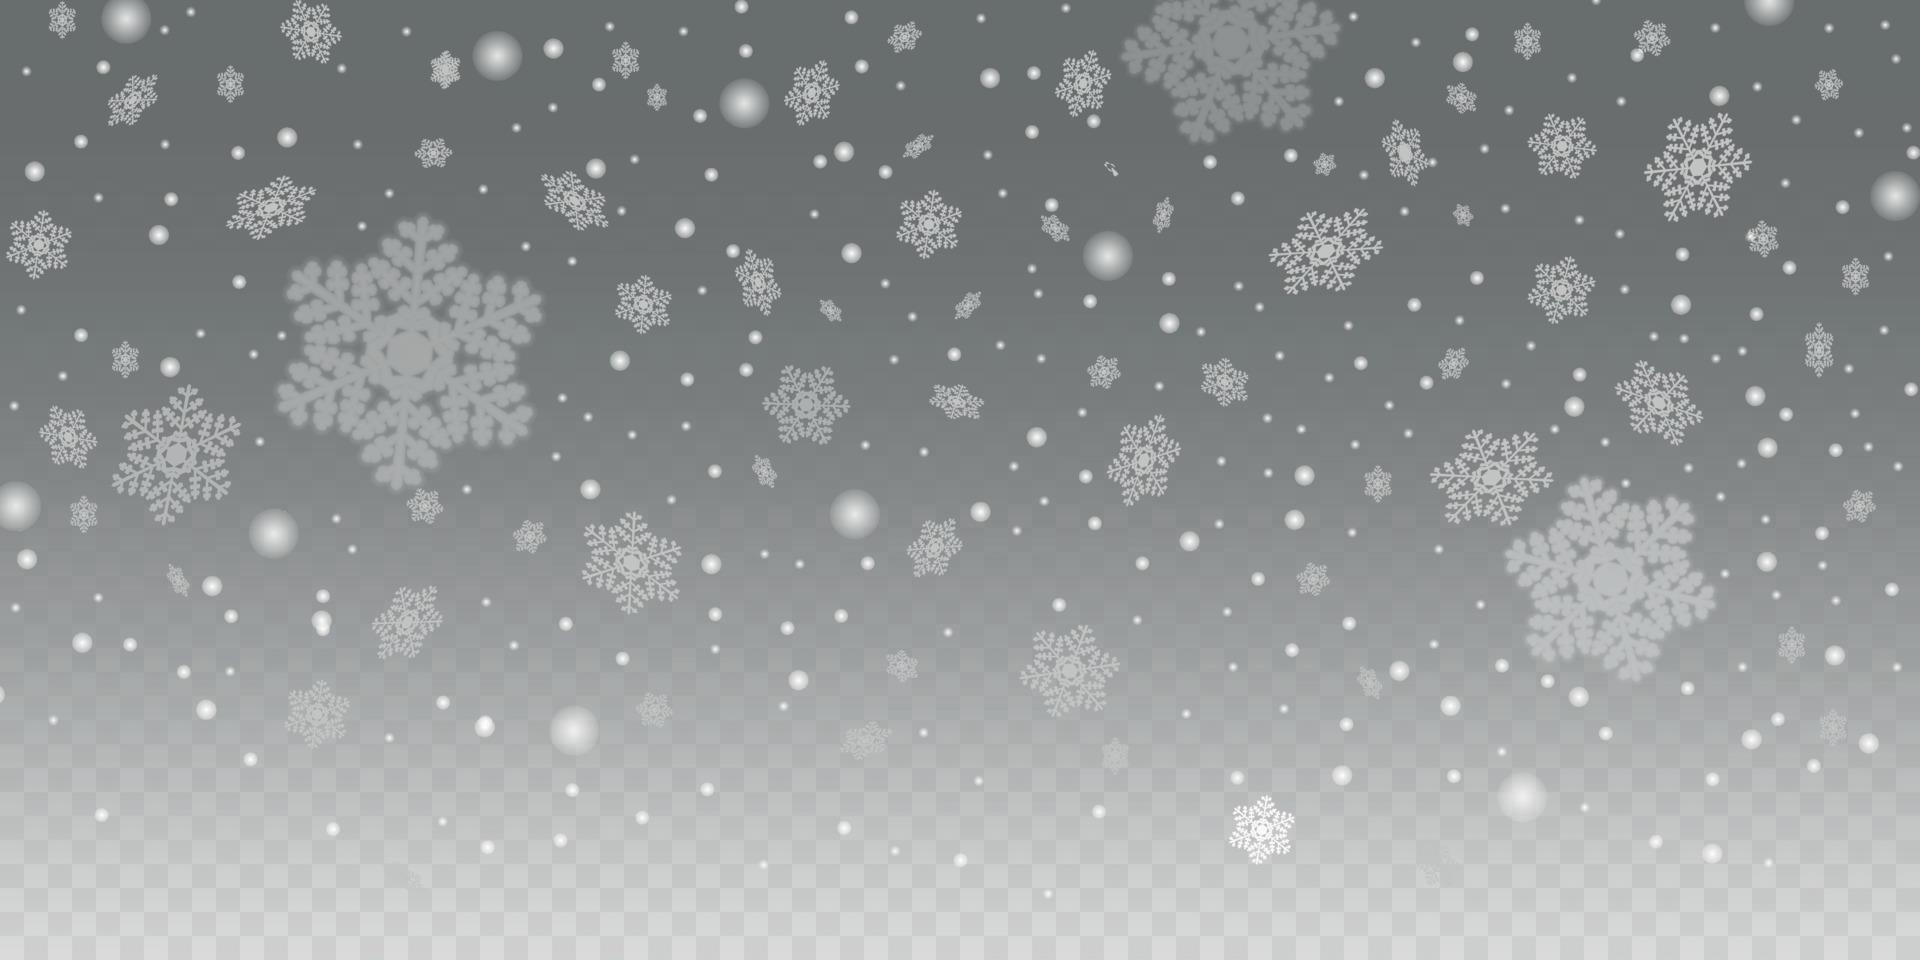 Schneeflocke transparenter Hintergrund. Schneeflocken fallen herunter, groß und klein, fokussiert und defokussiert. Grafikdesign. vektor